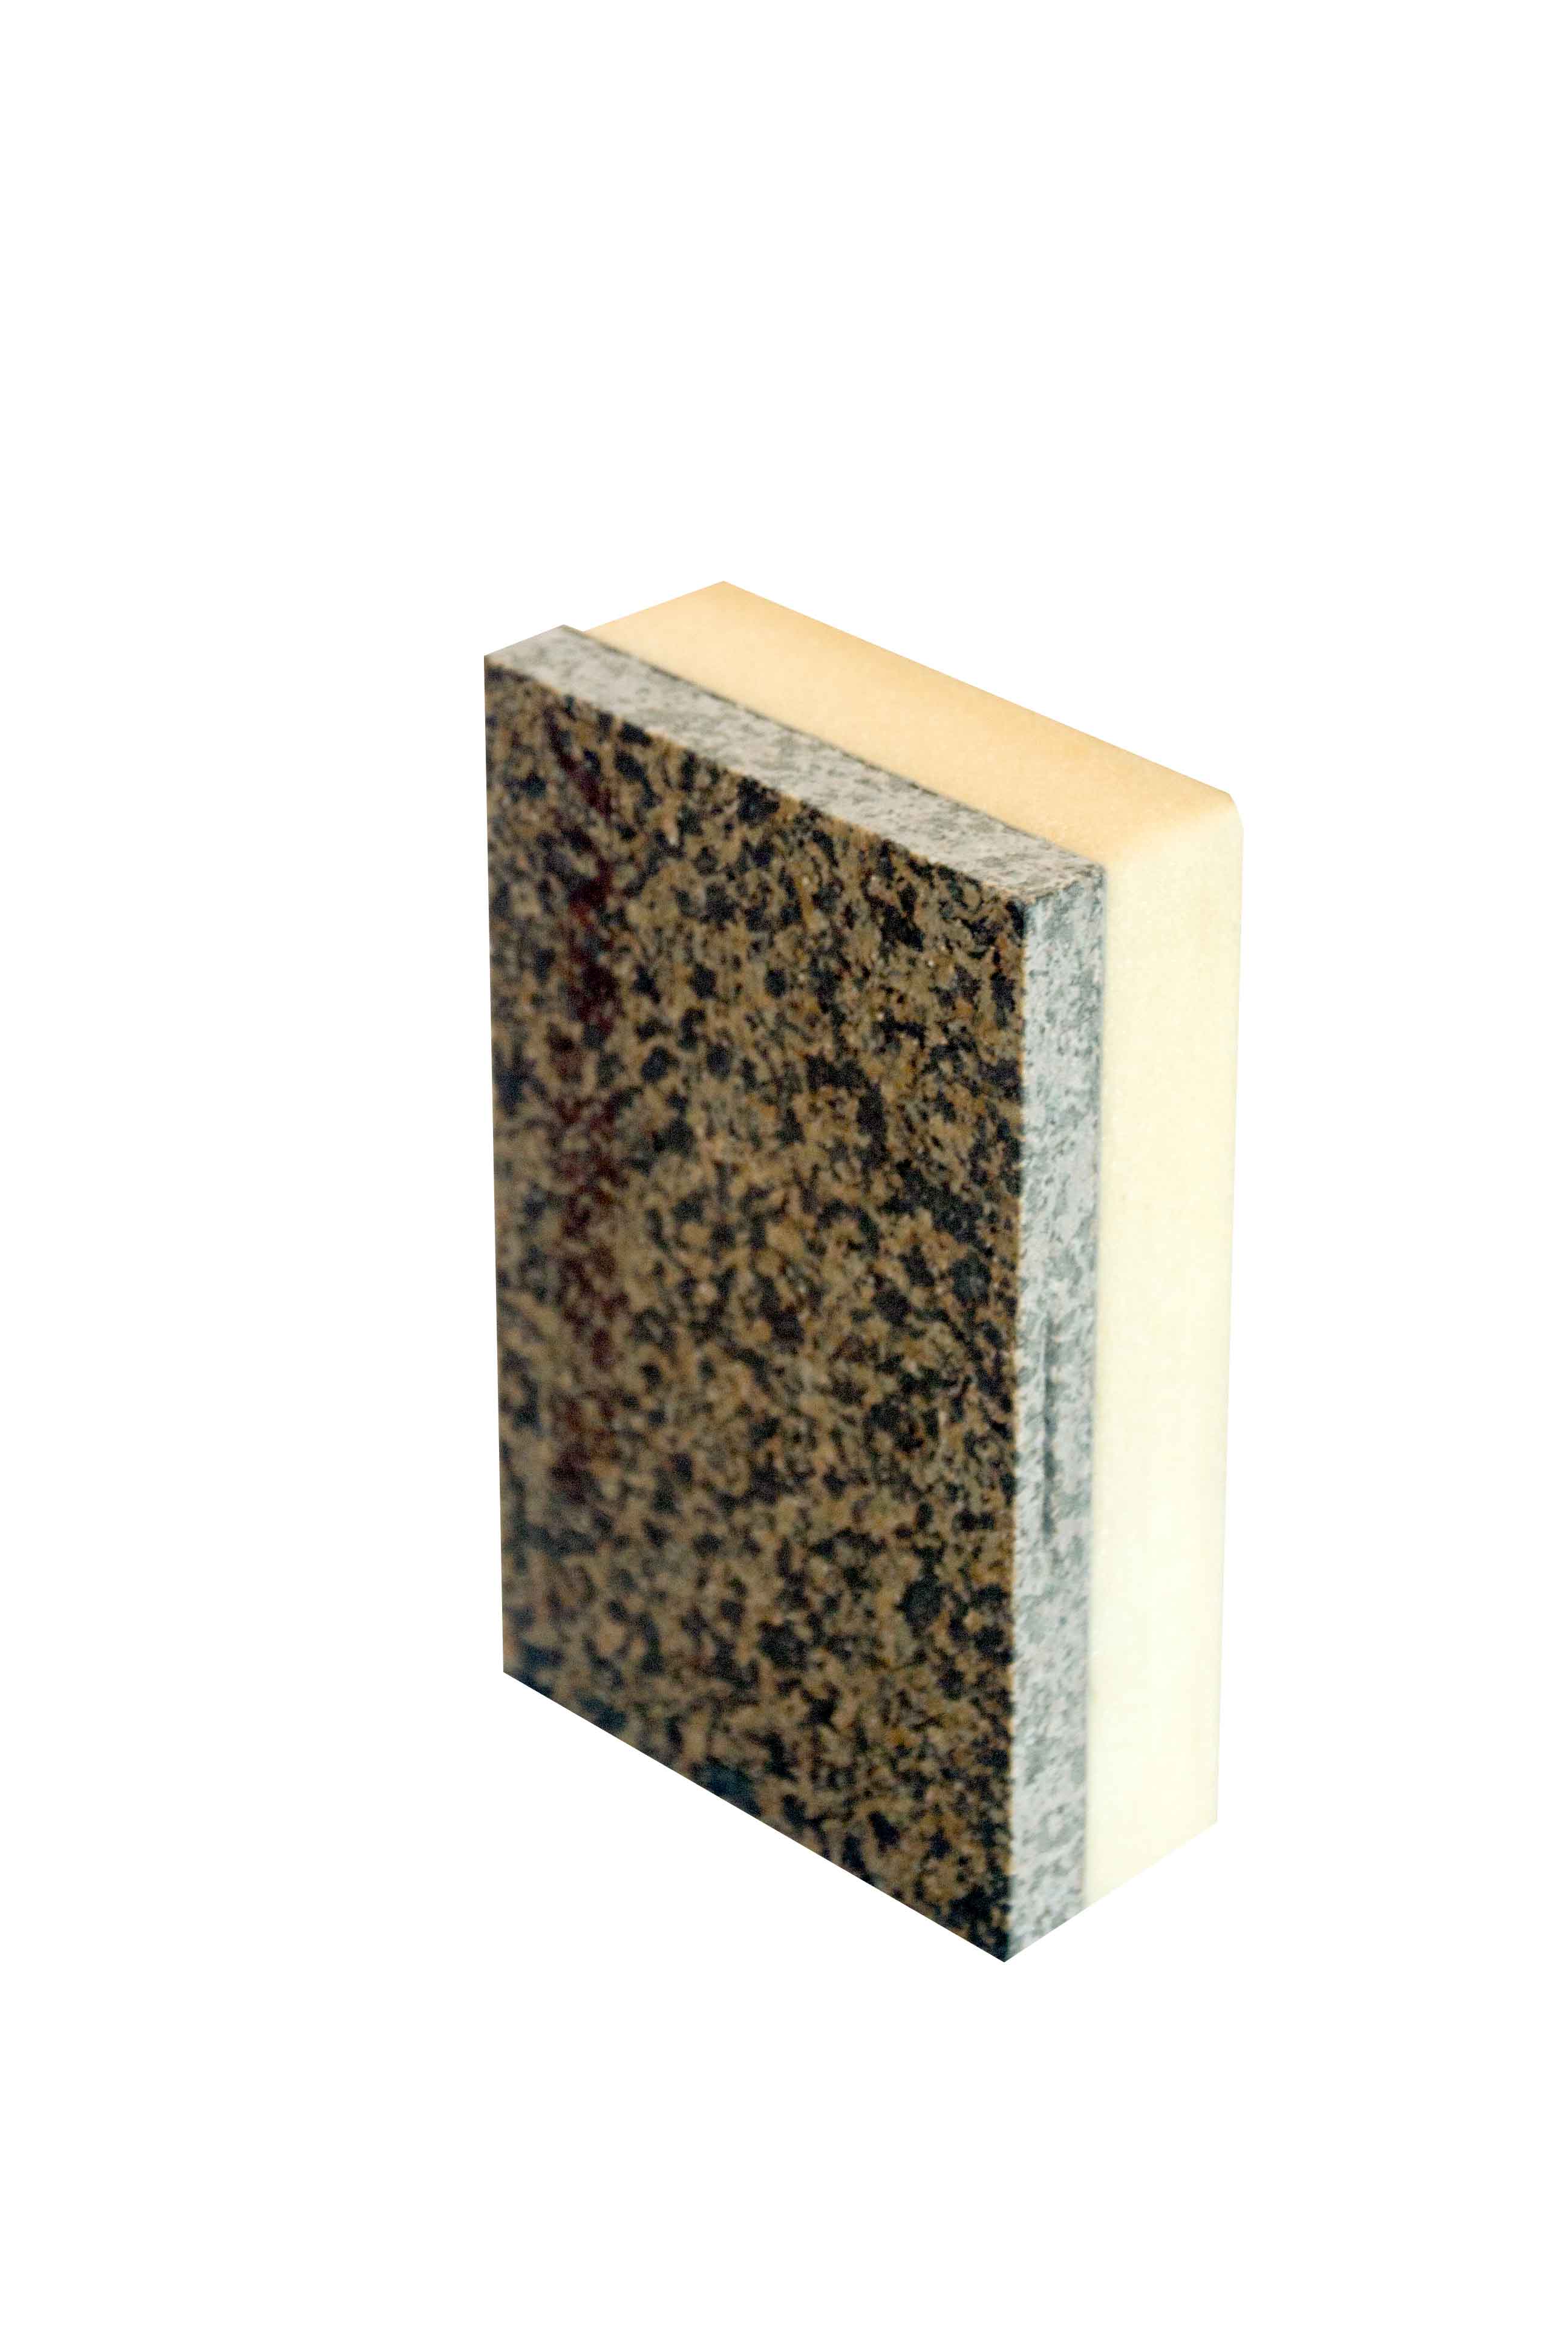 天然薄片石材复合聚氨酯保温装饰一体板 